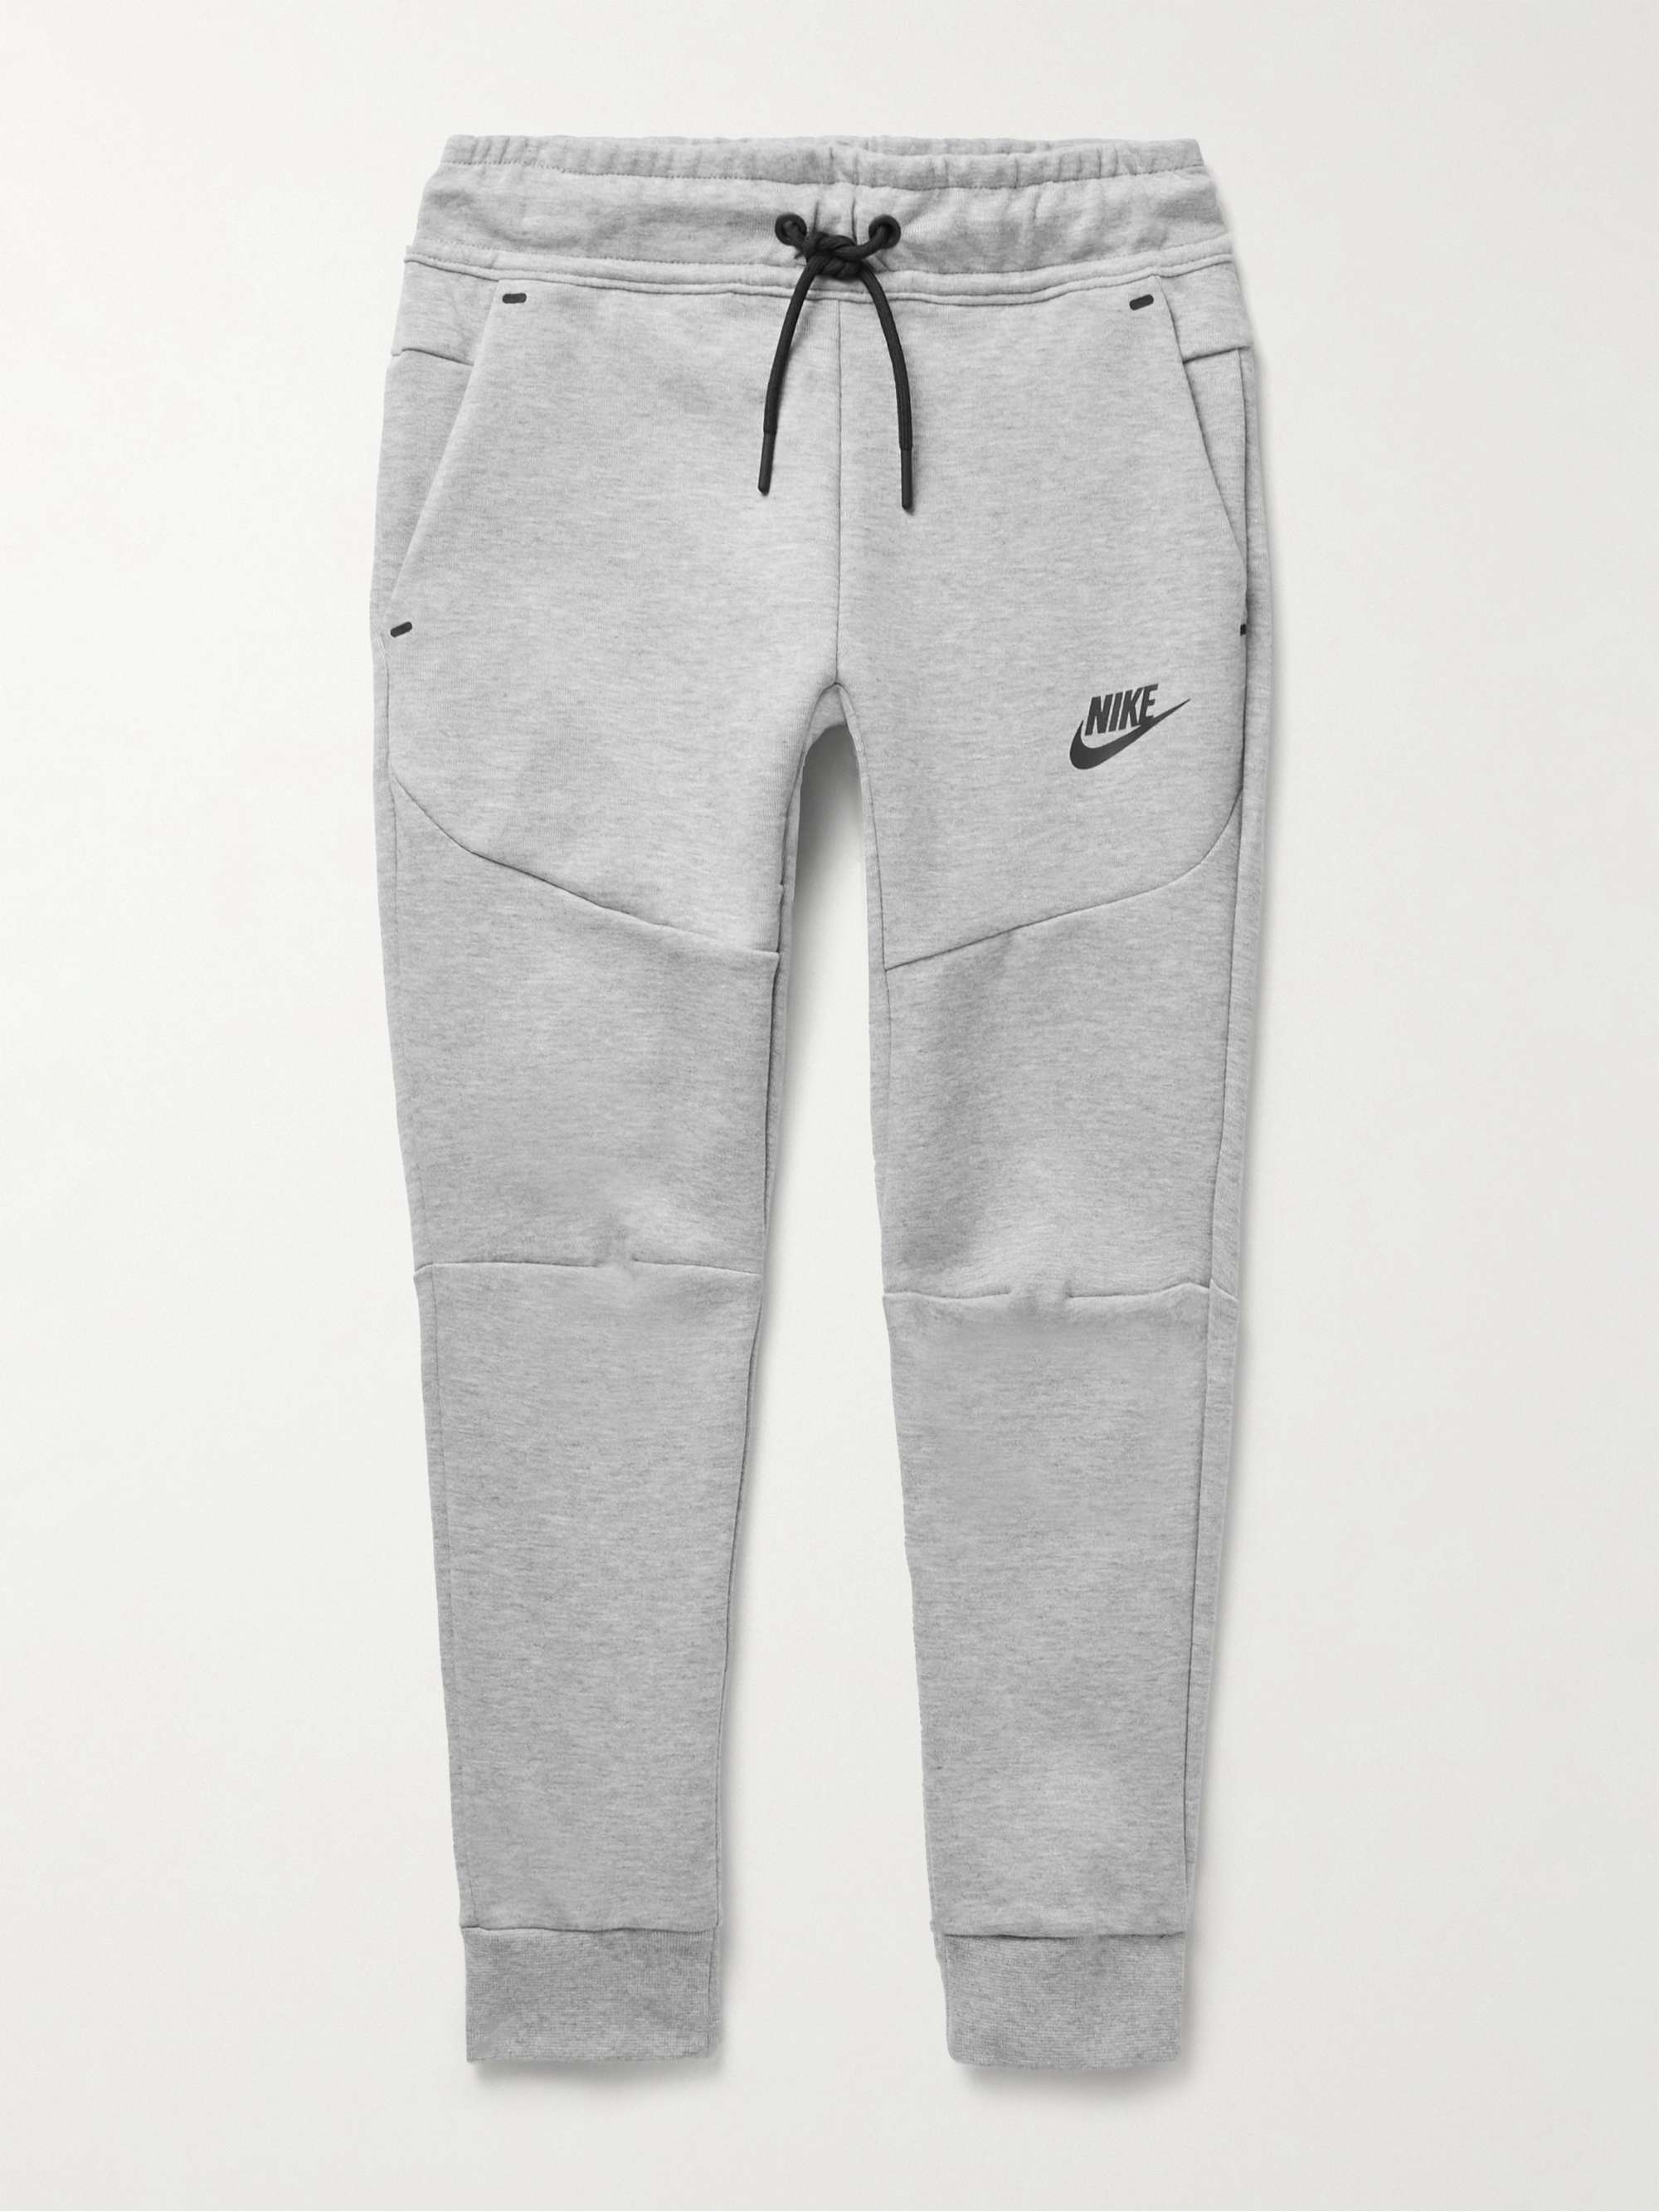 NIKE Sportswear Cotton-Blend Tech Fleece Sweatpants | MR PORTER